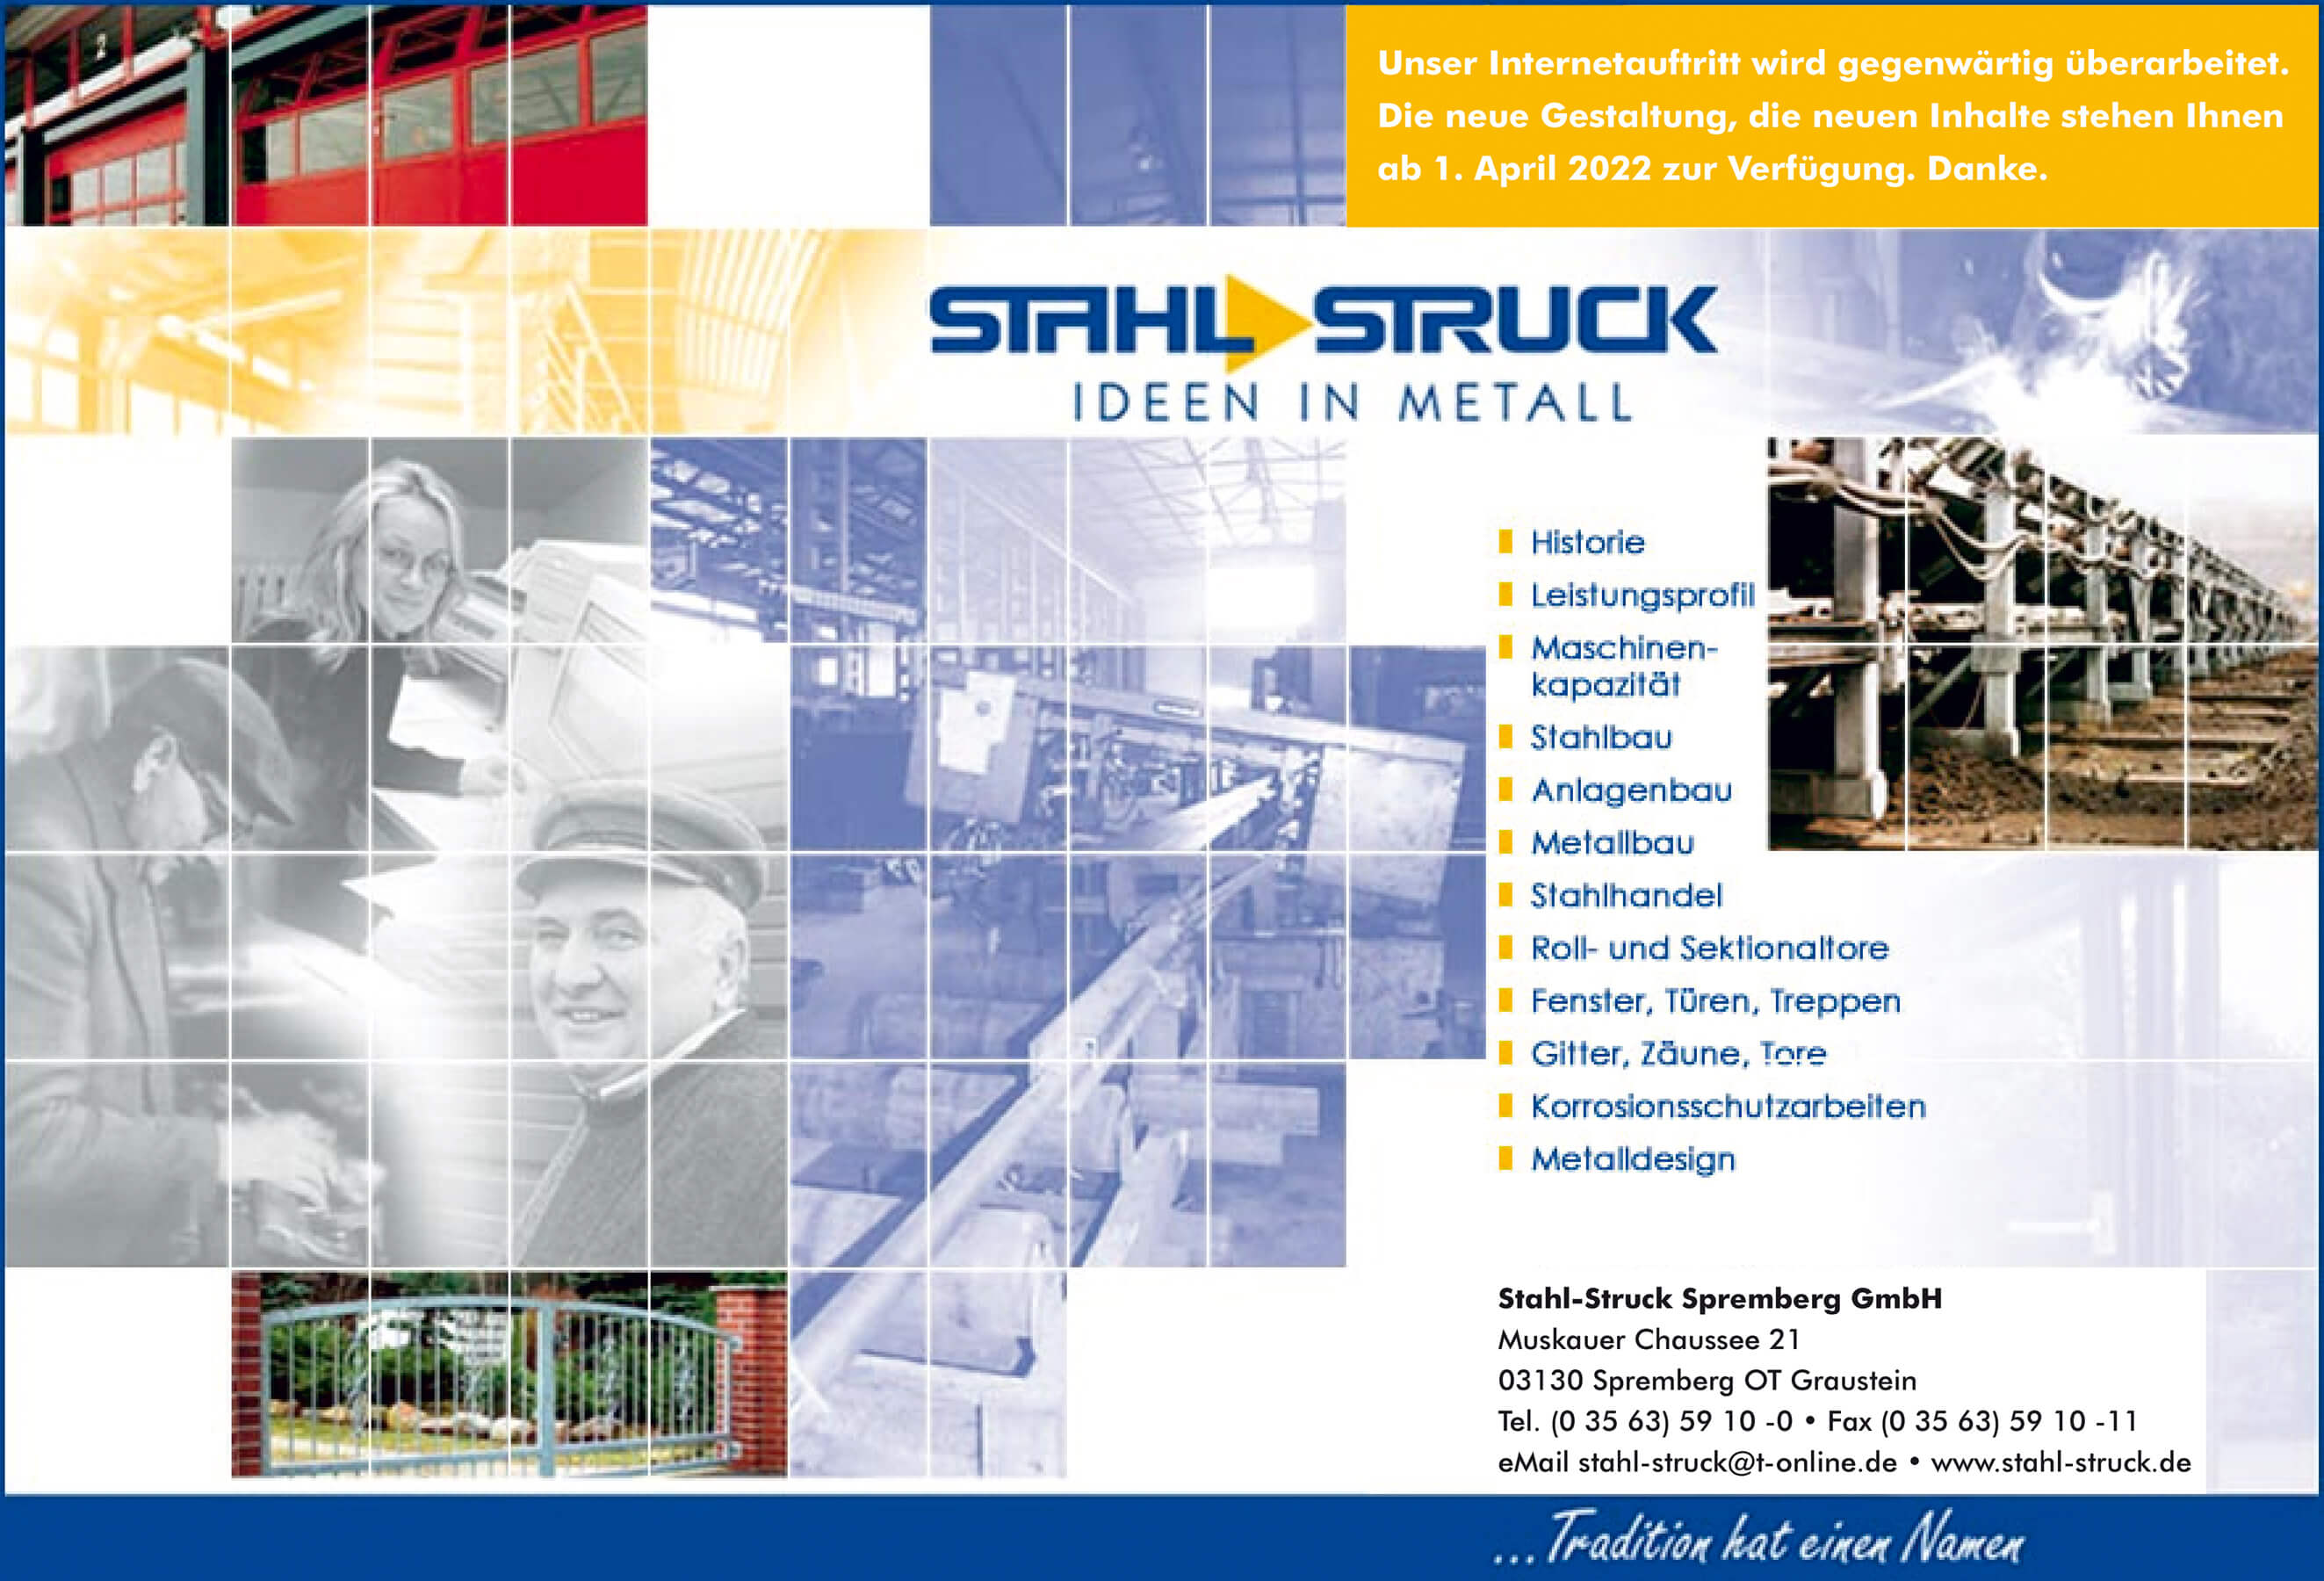 Stahl-Struck Spremberg GmbH: Stahlbau • Anlagenbau • Metallbau • Stahlhandel • Roll- und Sektionaltore • Fenster, Türen, Treppen • Gitter, Zäune, Tore • Korrosionsschutzarbeiten • Metalldesign